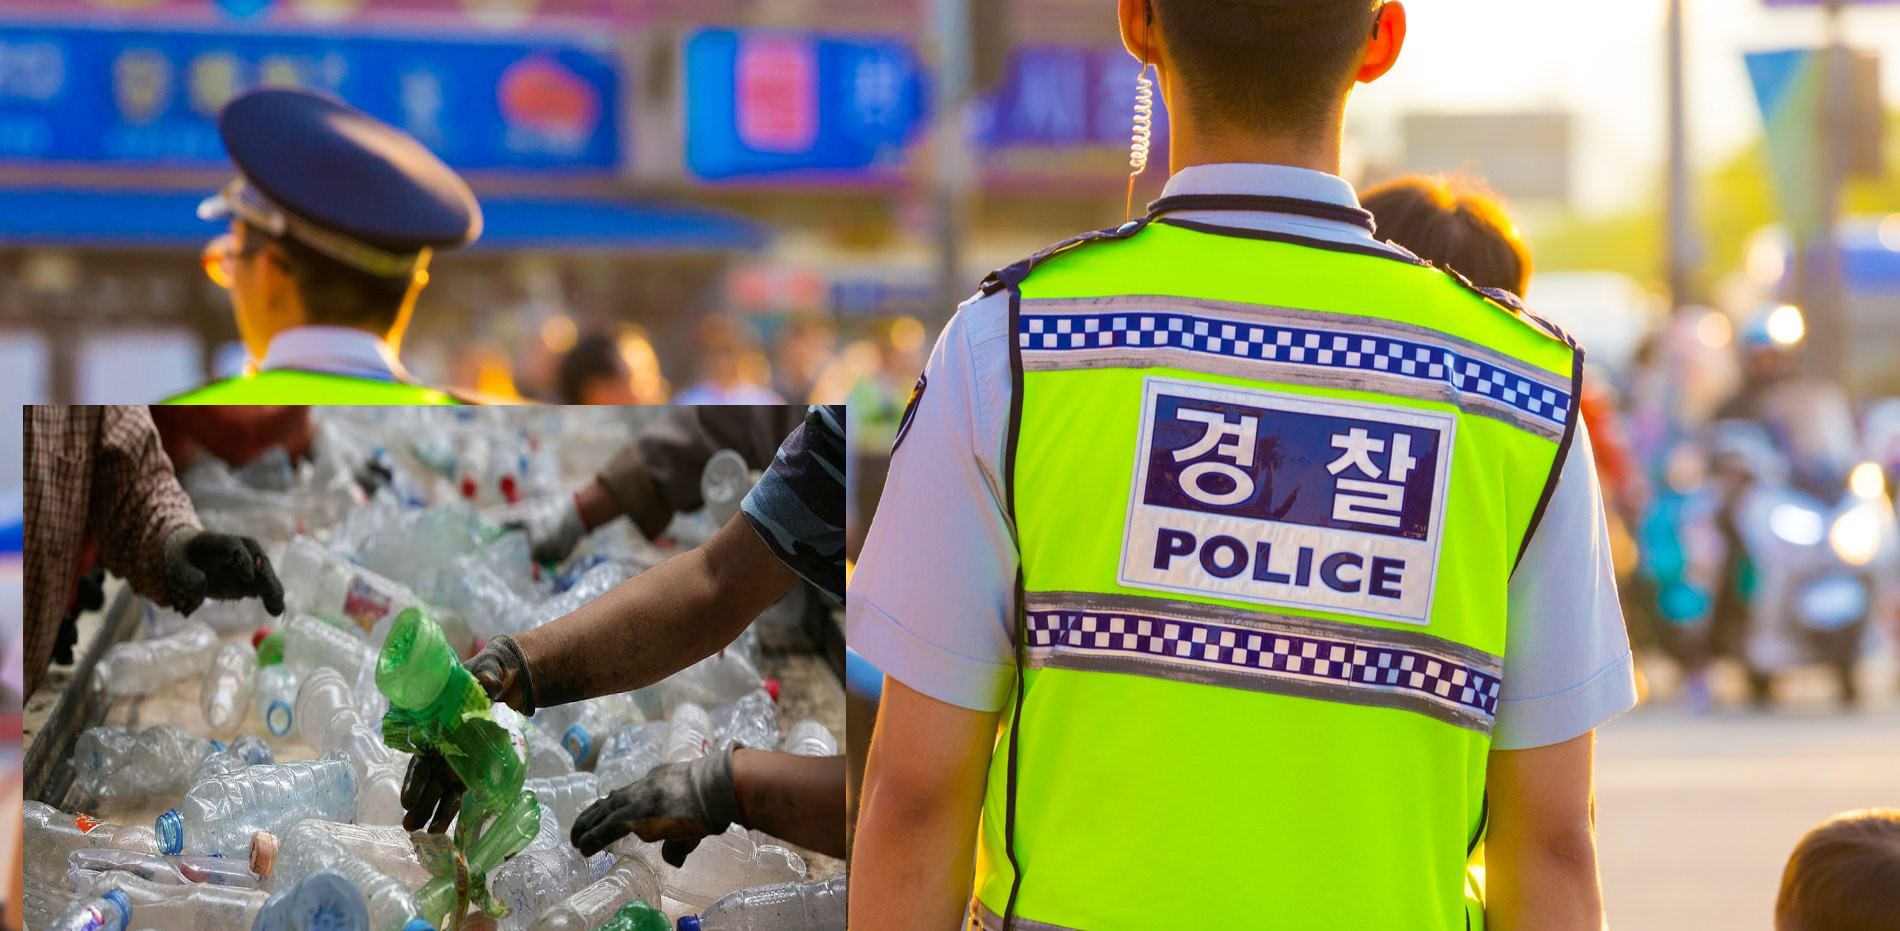 Что общего между пластиковыми бутылками и полицейской униформой